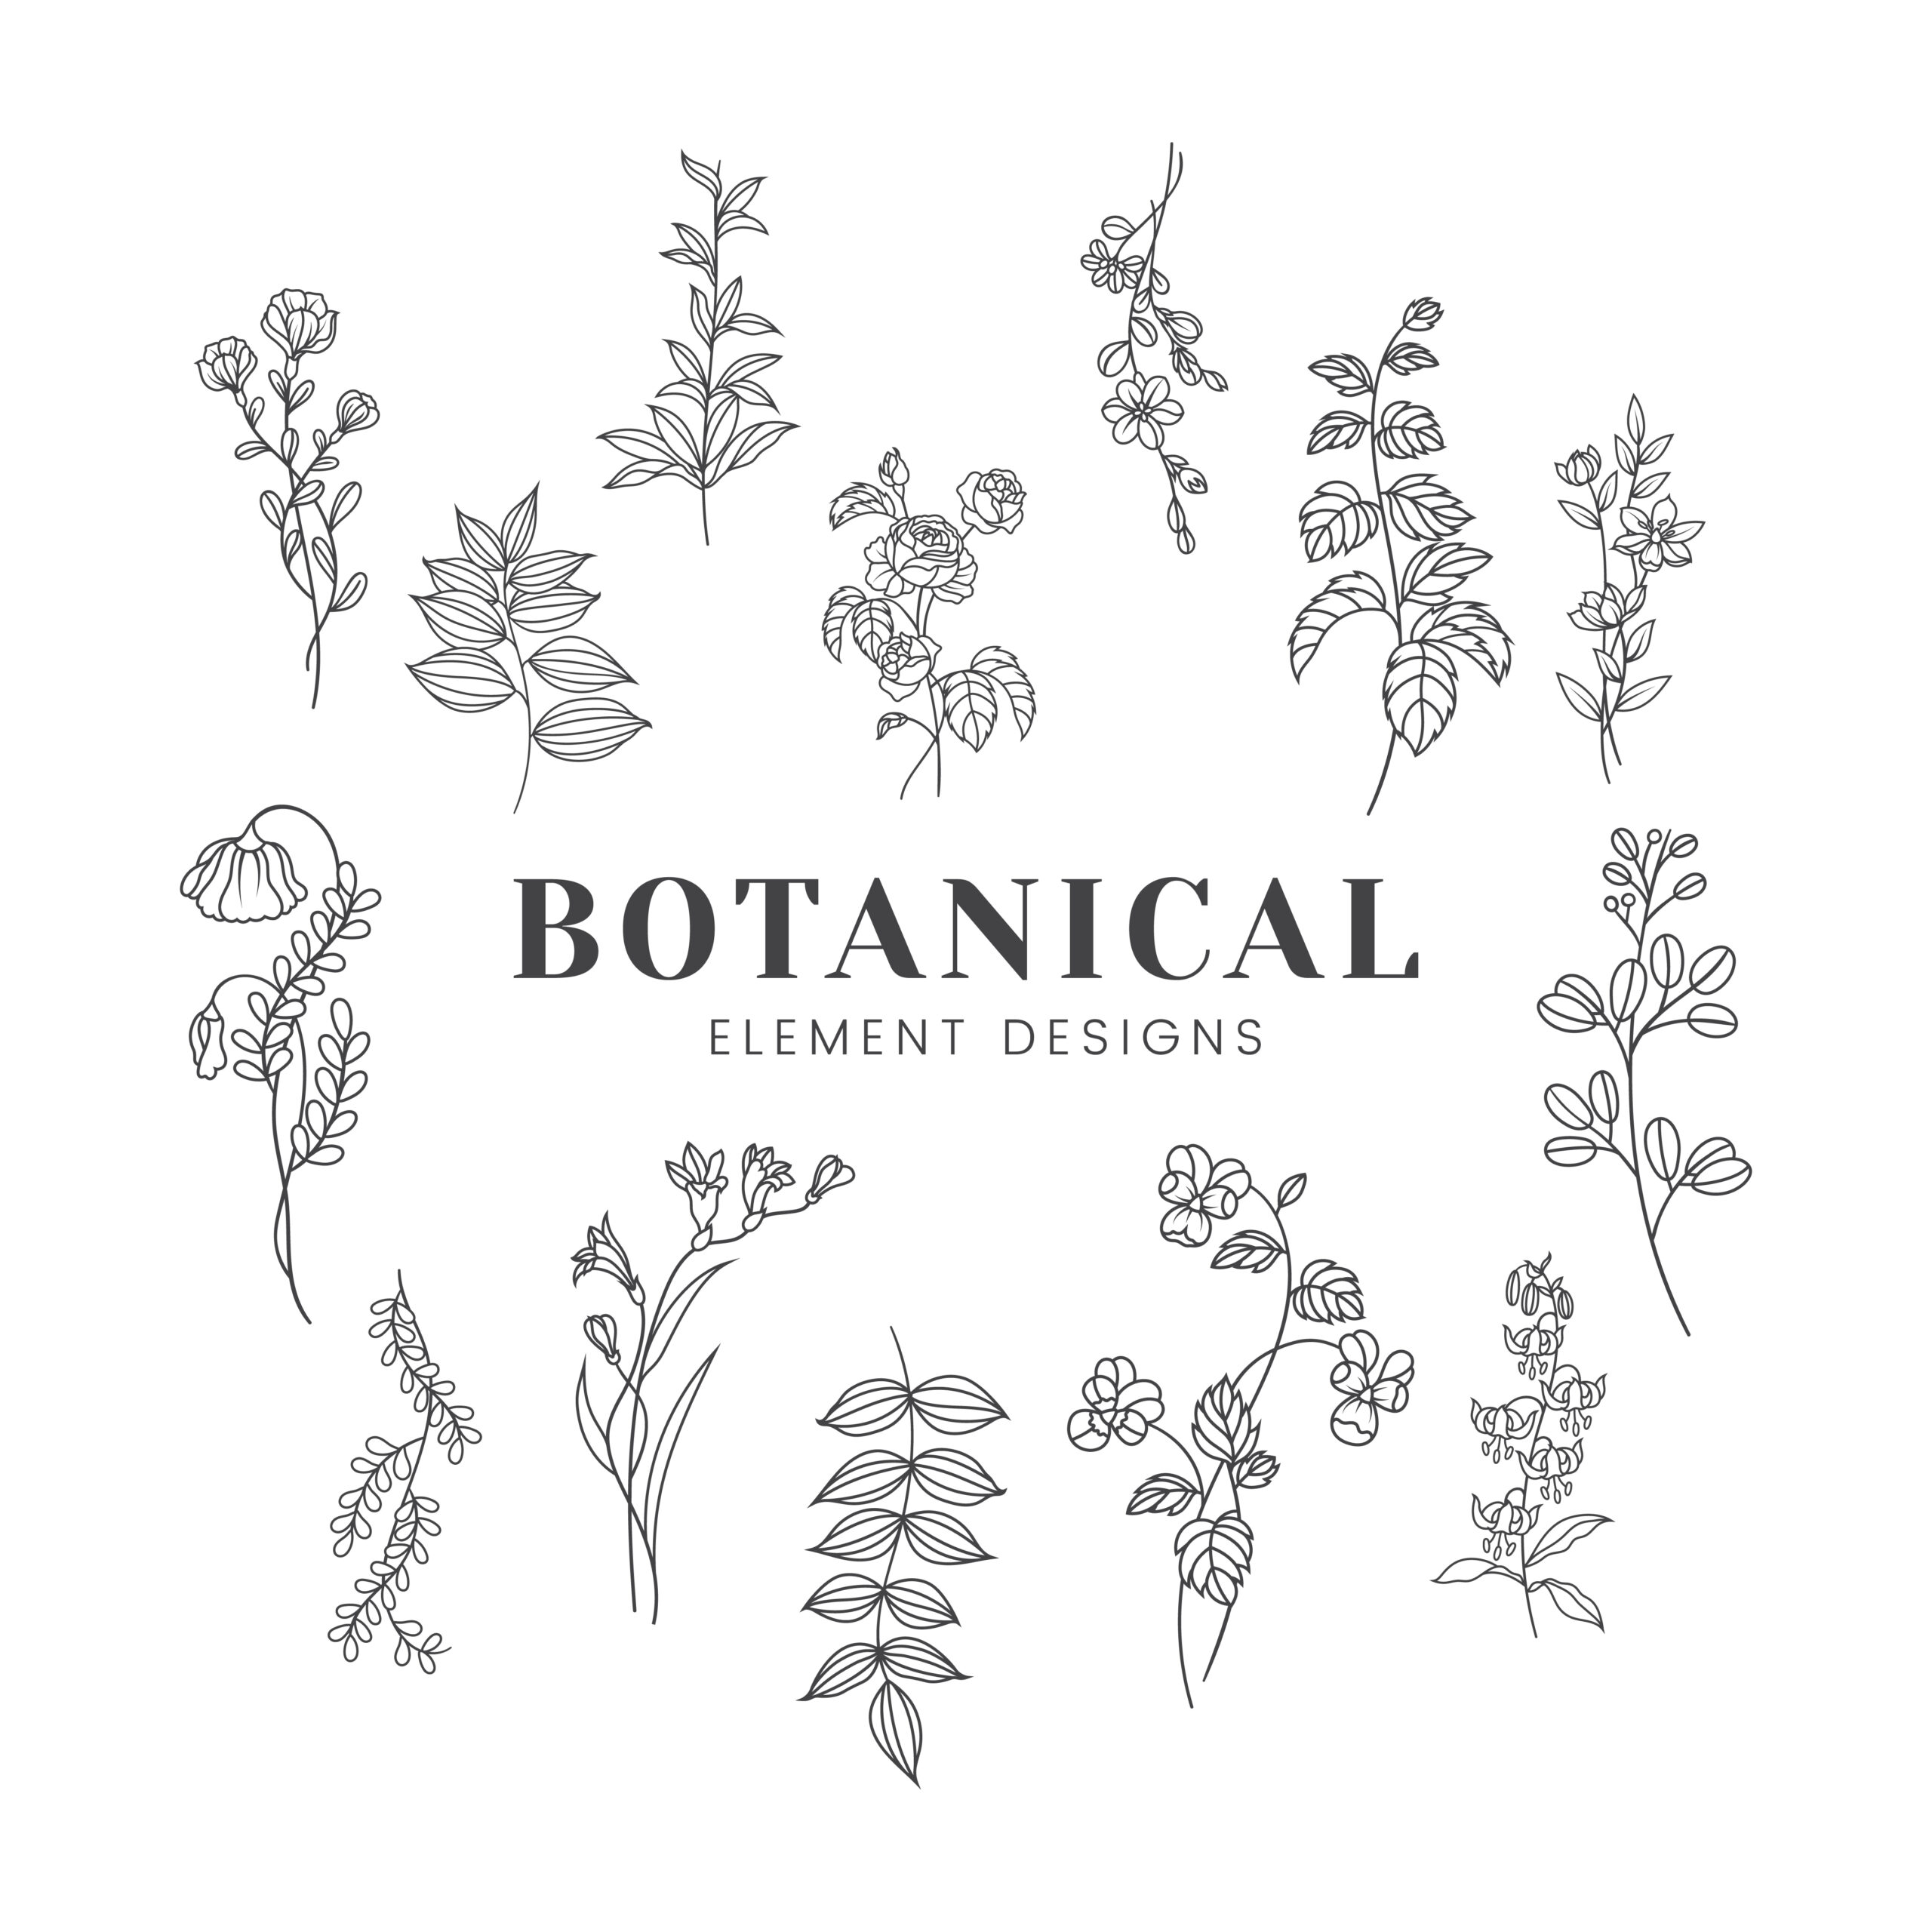 Botanical Floral Mockup Illustration Download Free Vectors, Clipart inside Botanical And White Flower